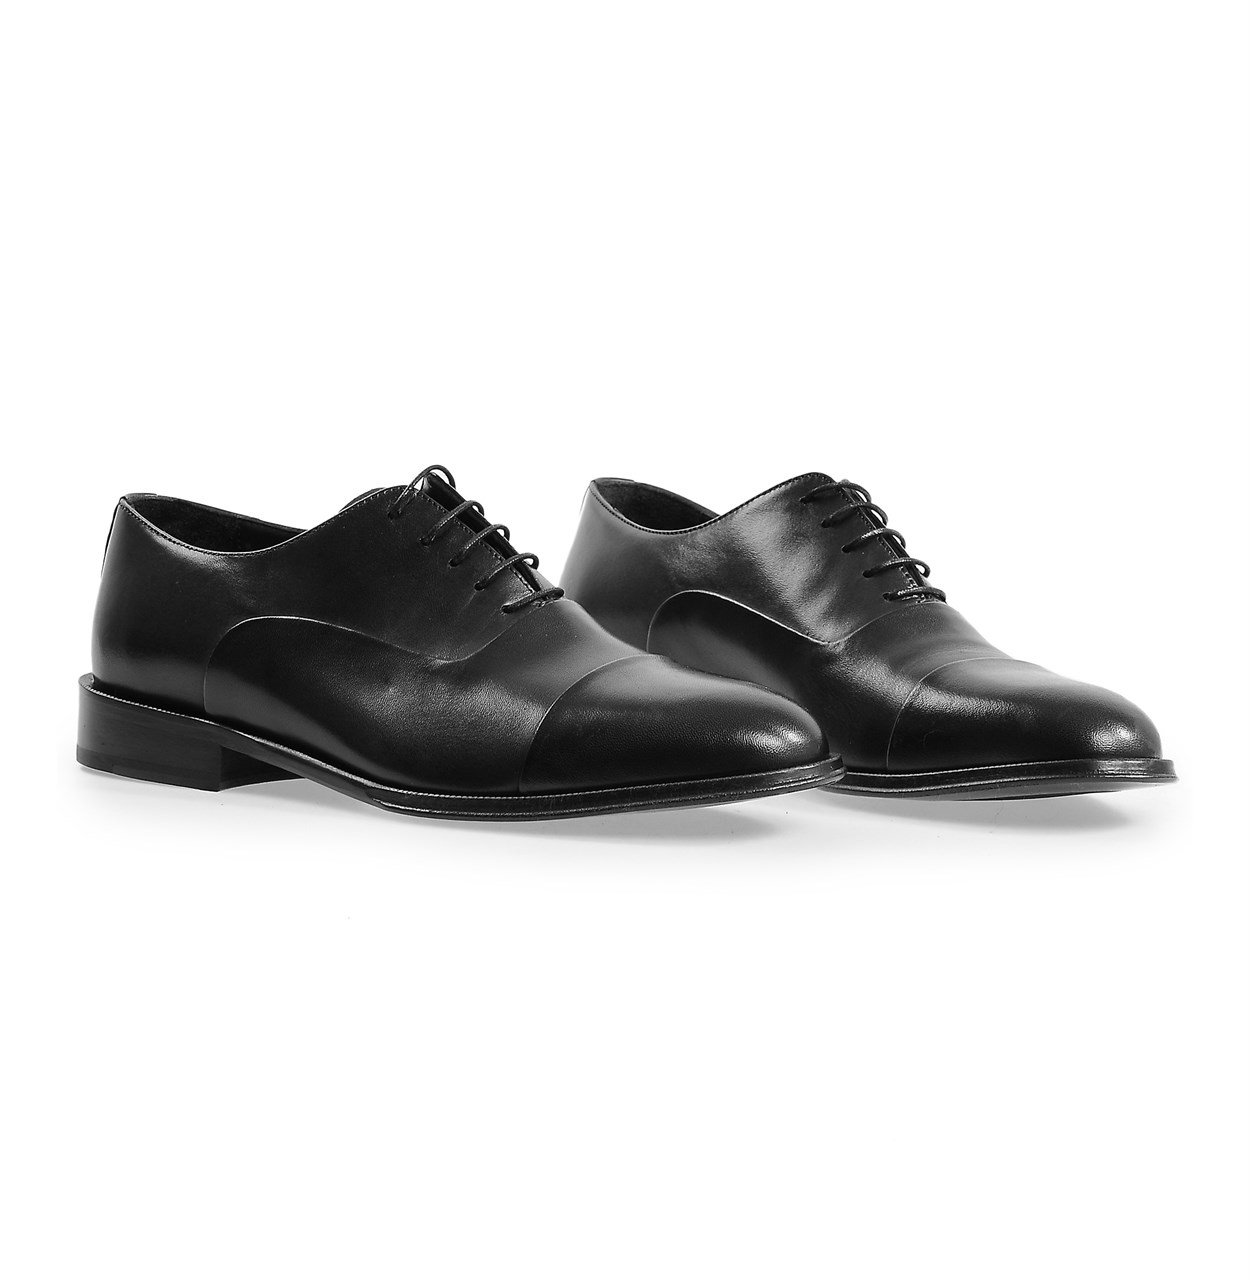 Siyah Klasik Kösele Ayakkabı | Flower Ayakkabı